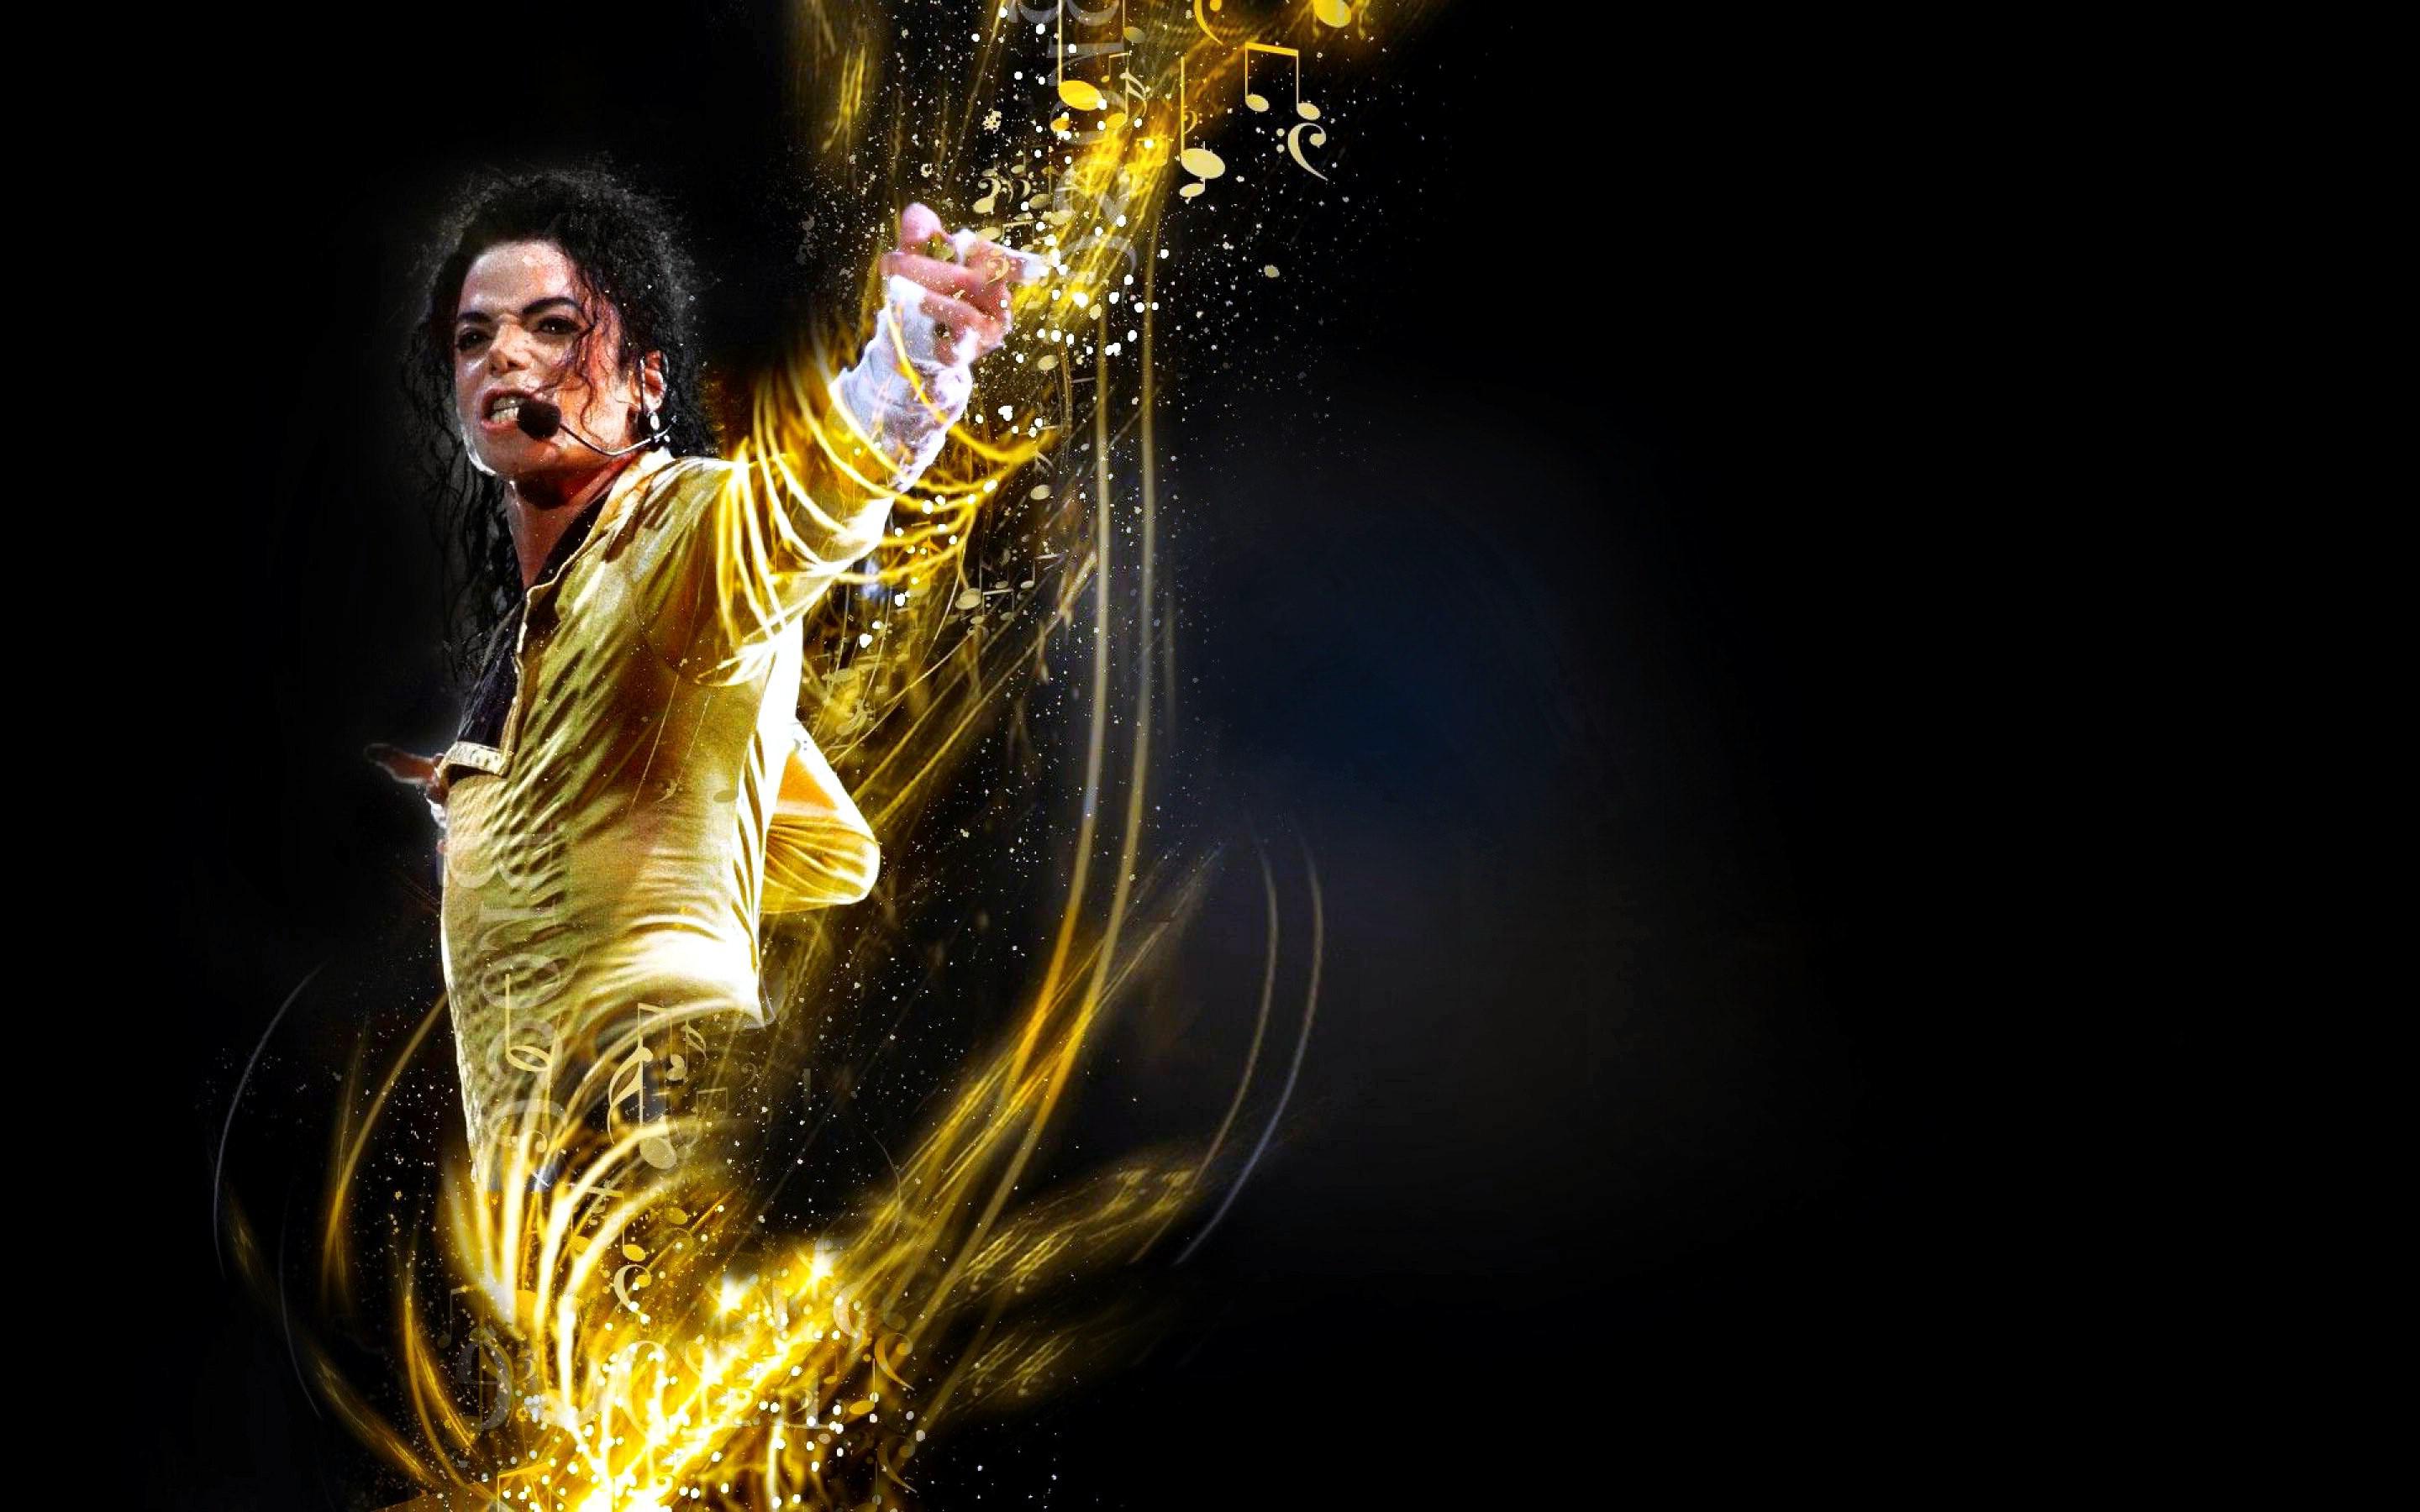 Fondos de Michael Jackson - Los mejores fondos de Michael Jackson gratis